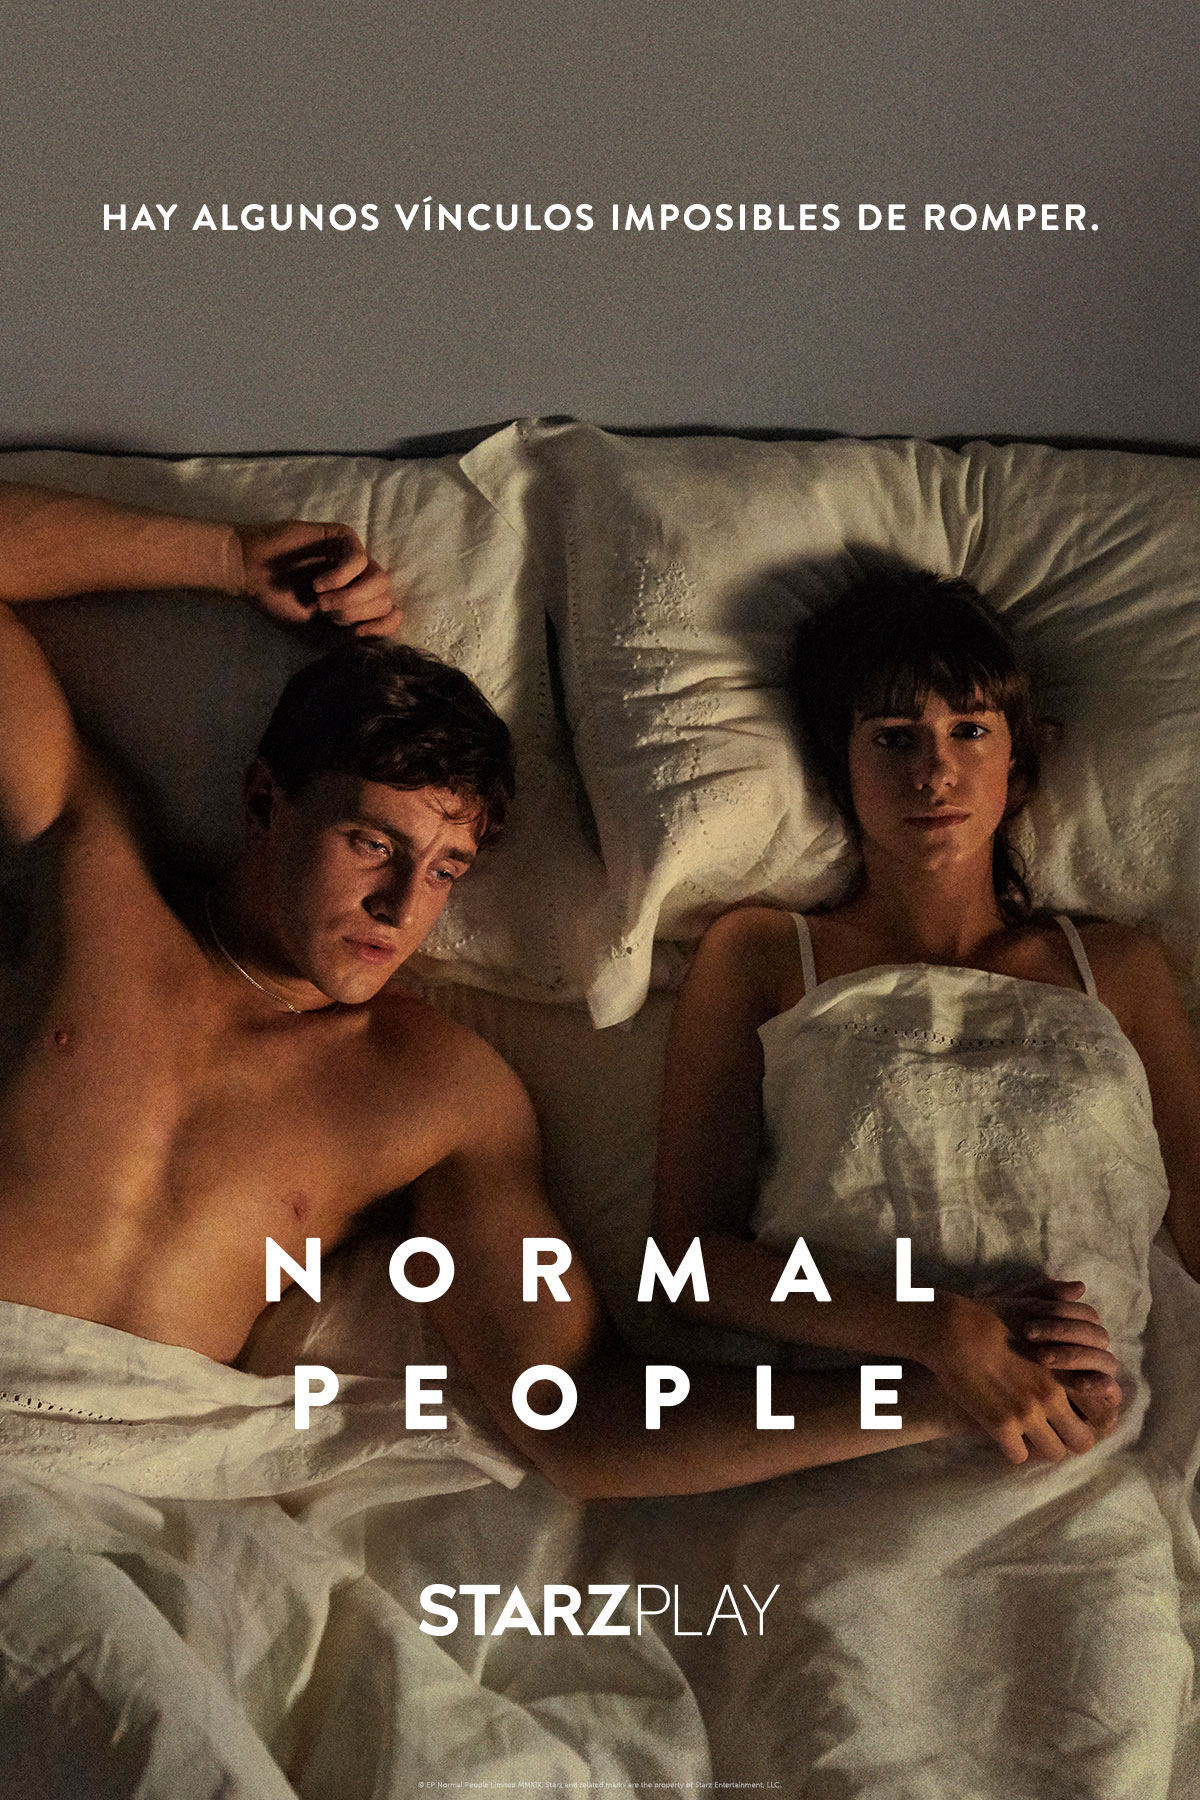 Normal People - Serie 2020 - SensaCine.com